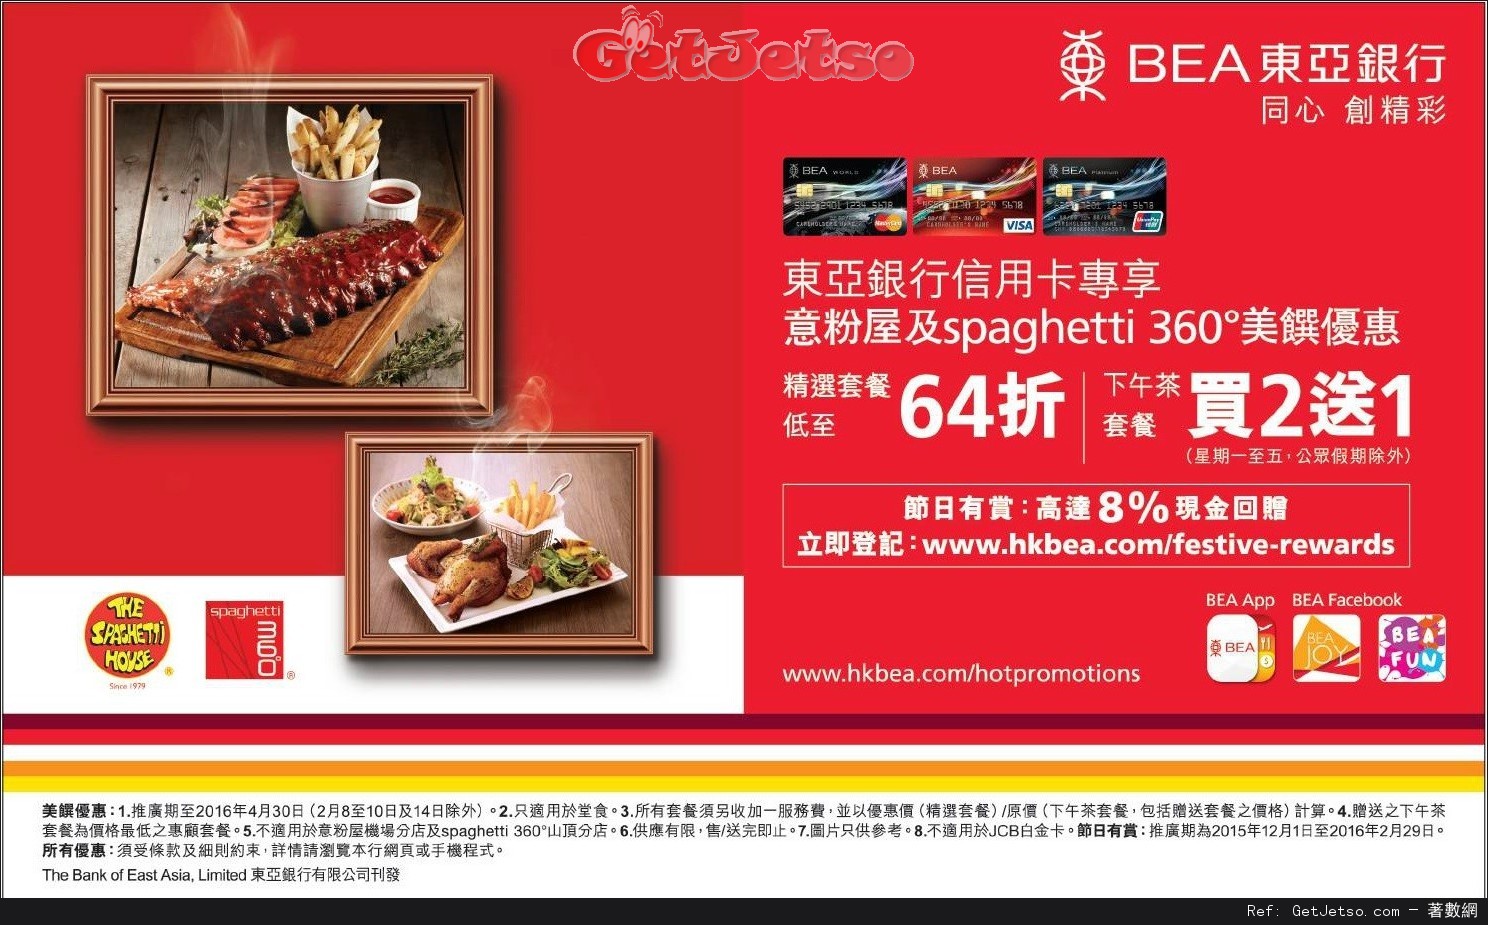 東亞信用卡享意粉屋及spaghetti 360°低至64折優惠(至16年4月30日)圖片1